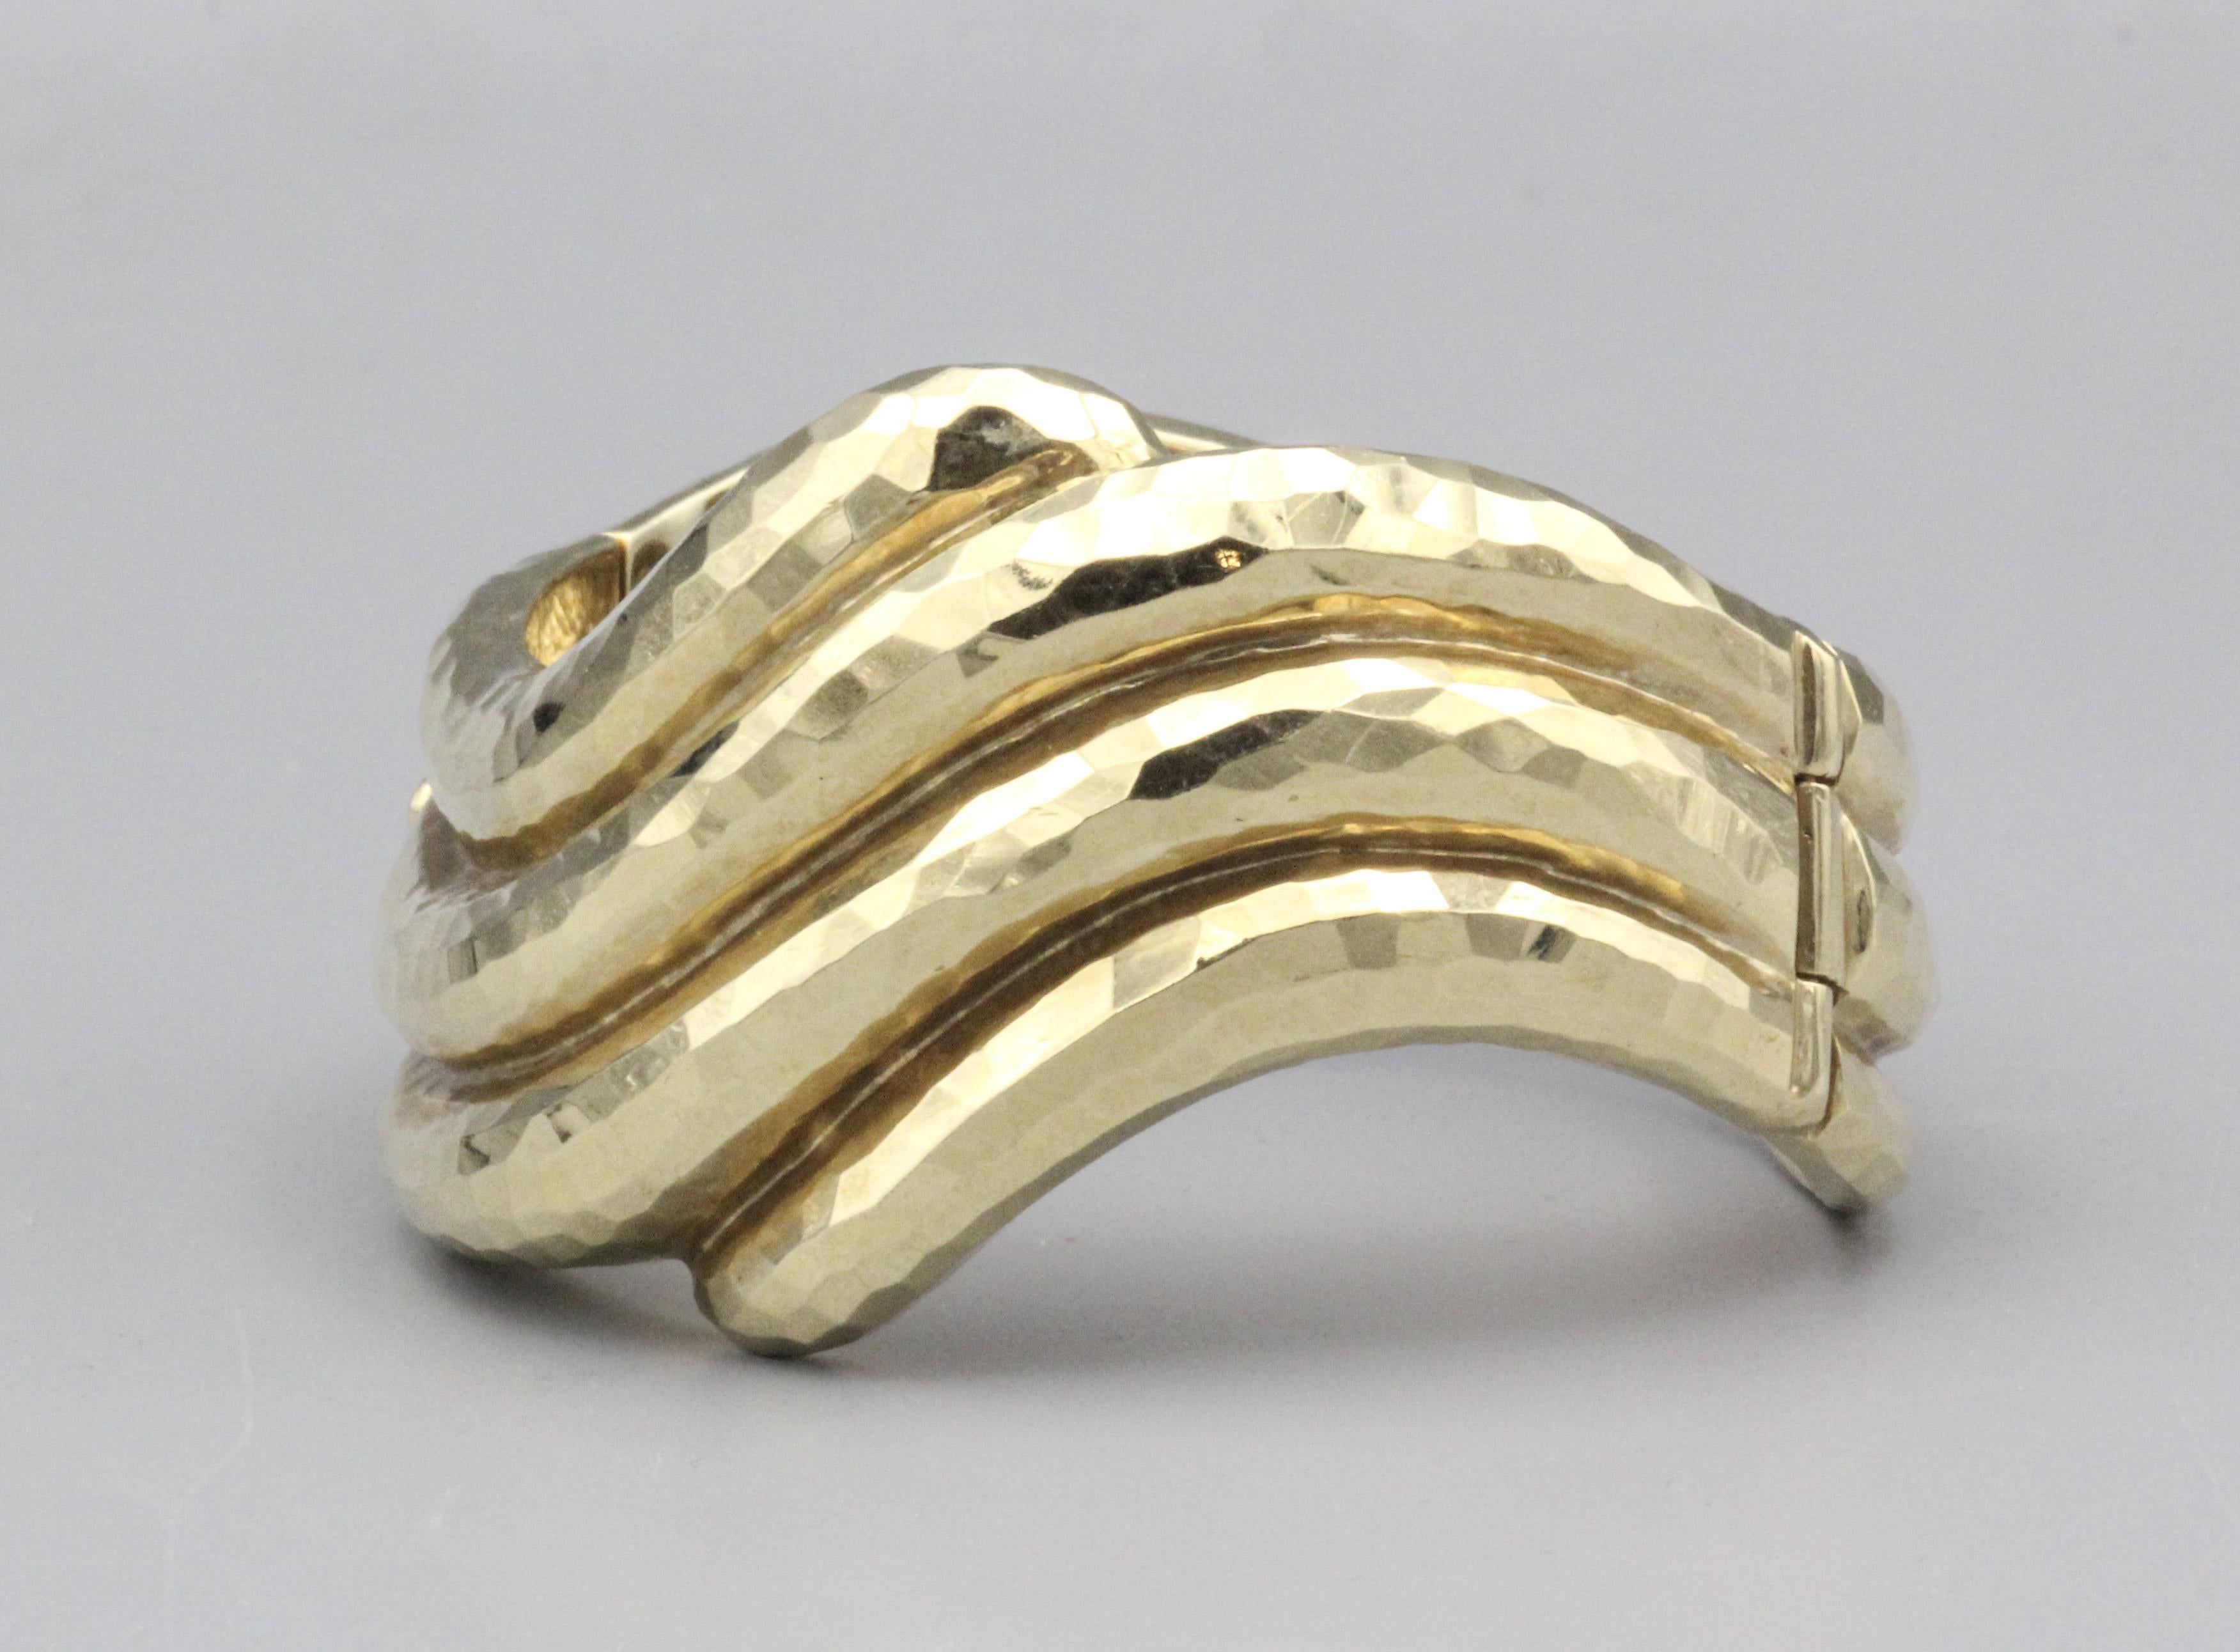 Imprégné de l'esprit de l'artisanat, le bracelet en or jaune 14K martelé de Rotkel dégage une allure distincte, mêlant harmonieusement l'élégance à une touche de charme organique. Fabriqué avec précision et soin, ce bijou exquis témoigne de la